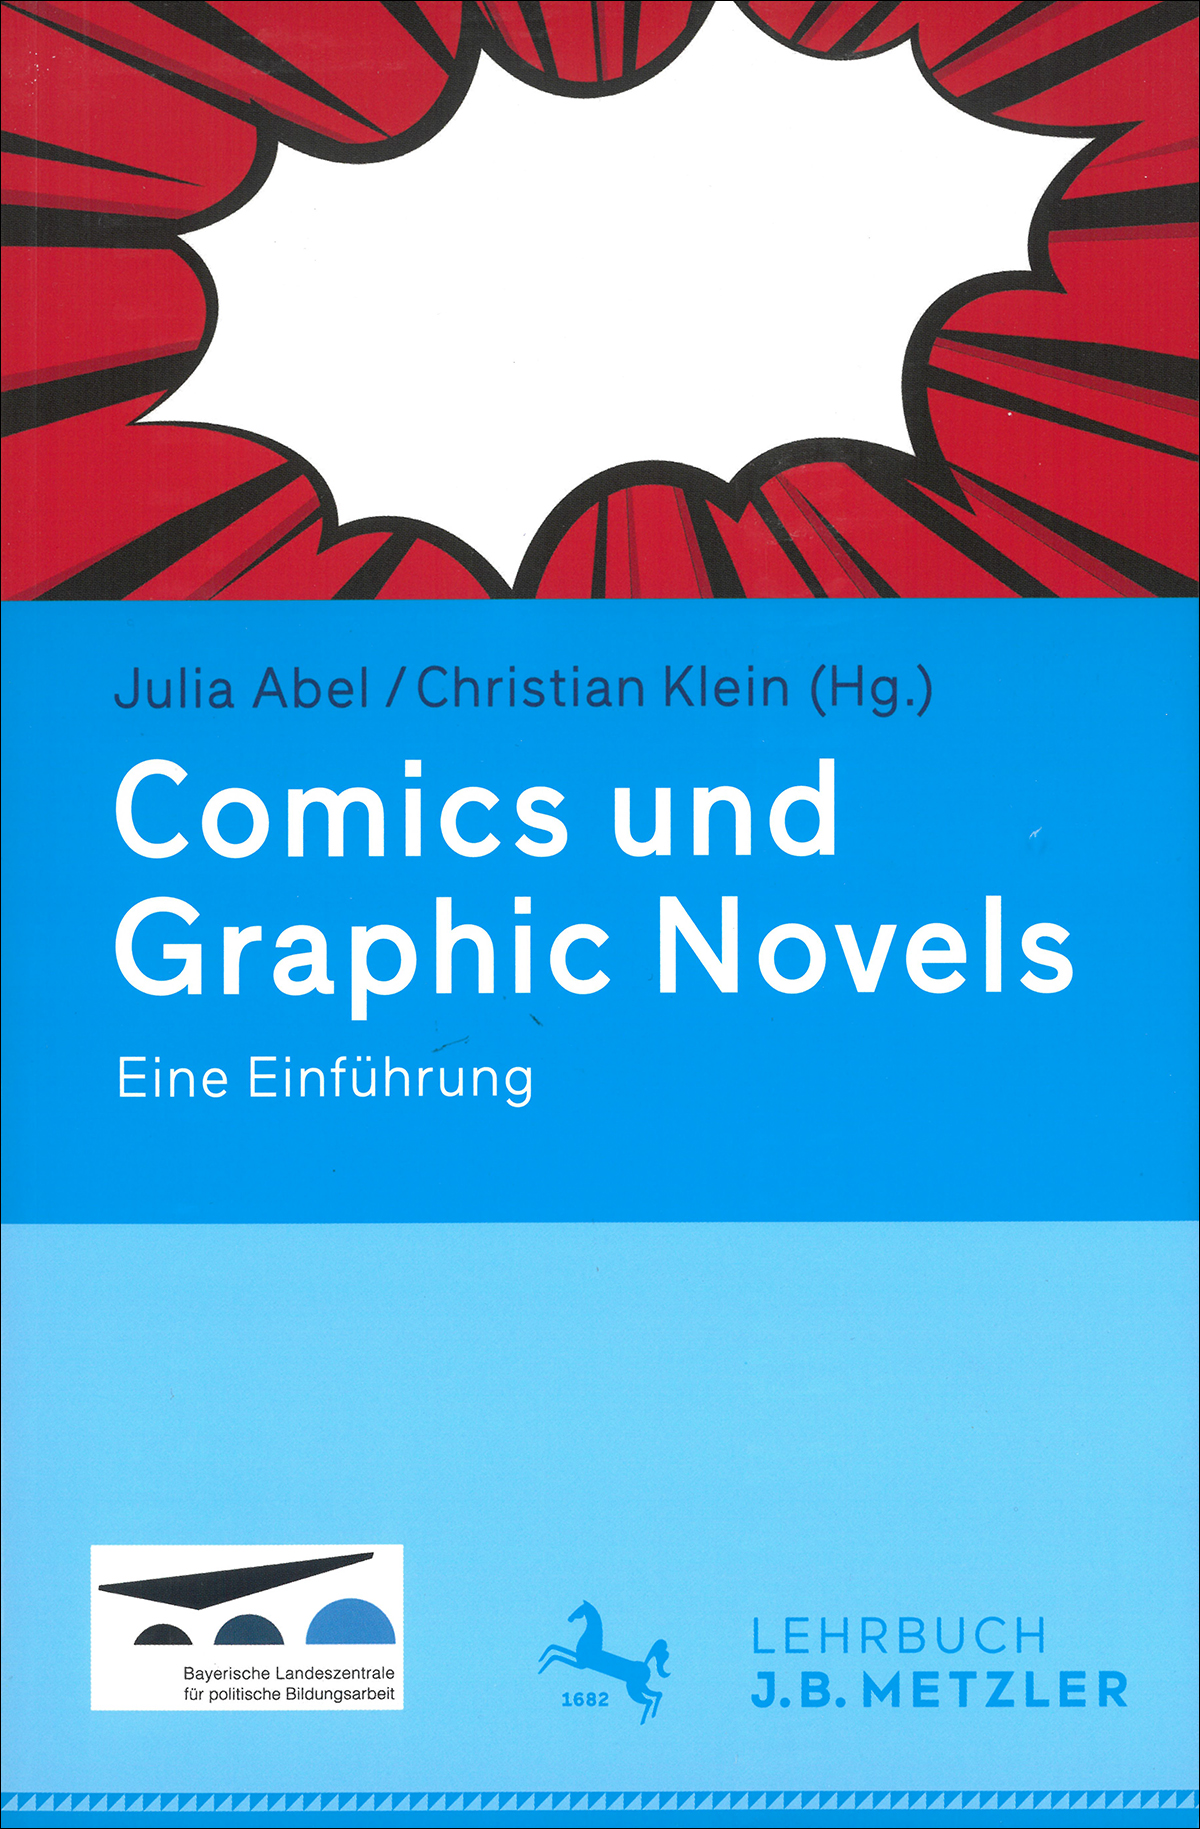 Buchcover "Comics und Graphic Novels"